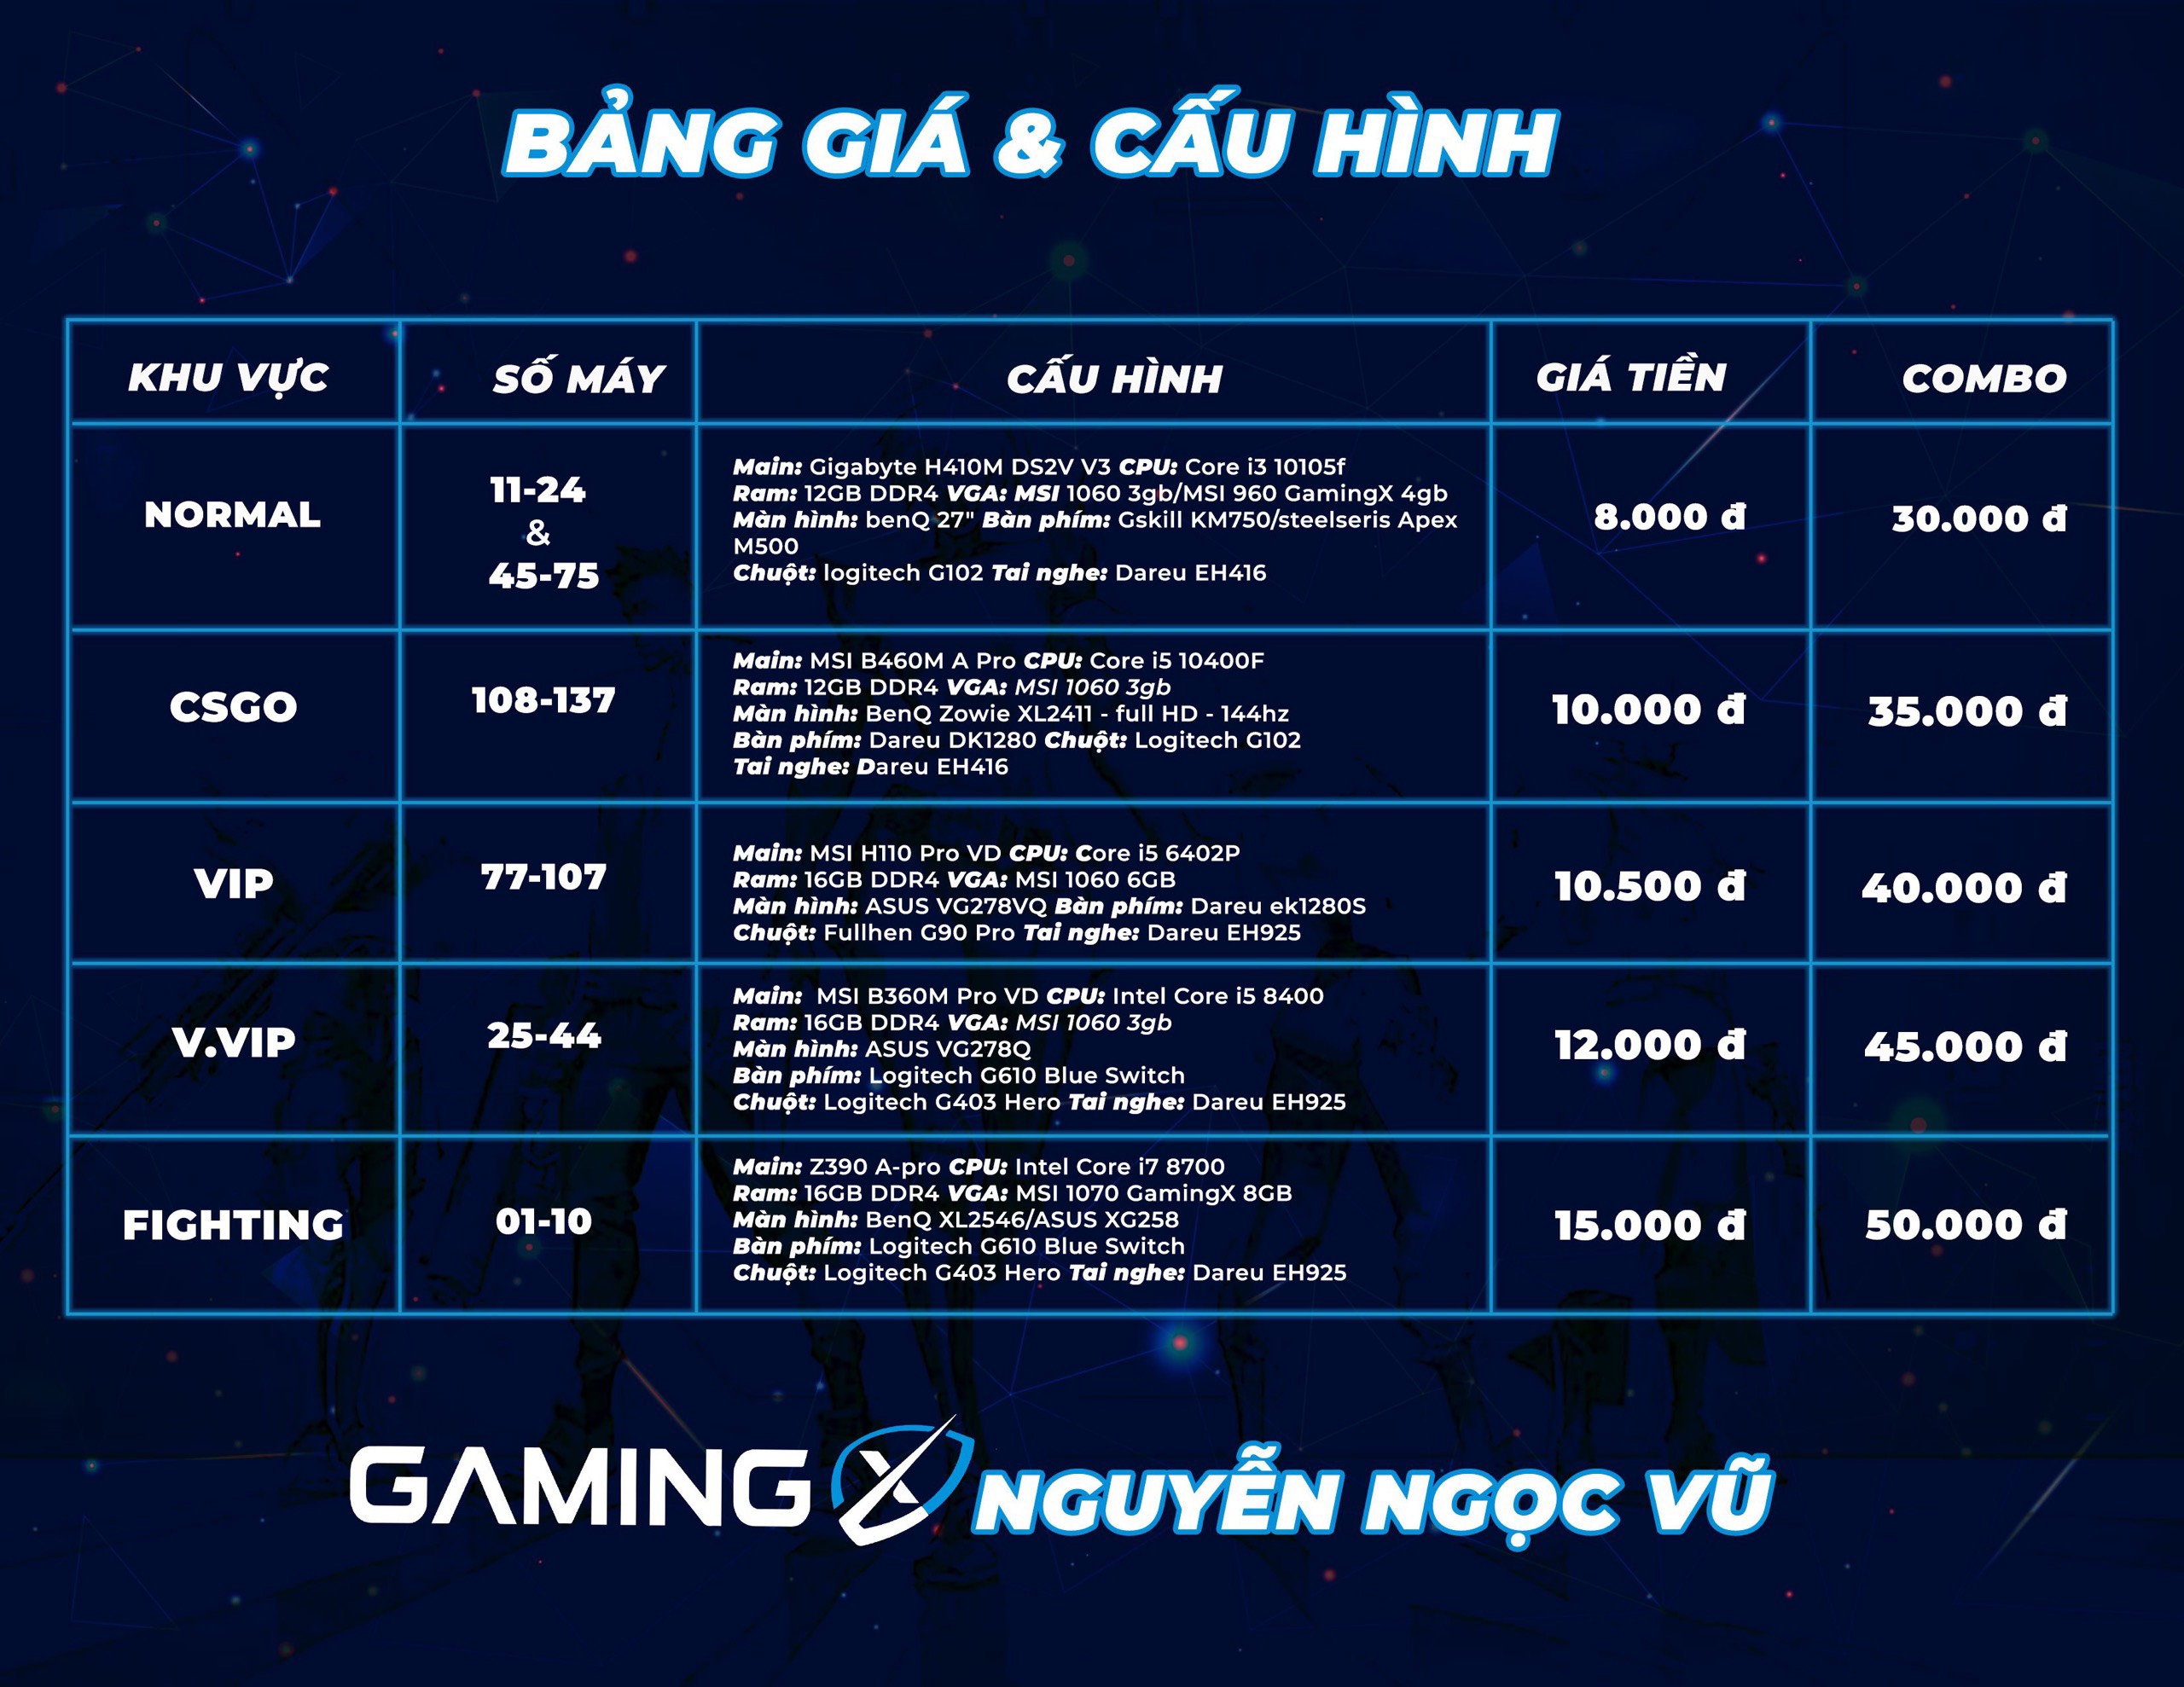 Cấu hình và bảng giá Gaming X 123 Nguyễn Ngọc Vũ